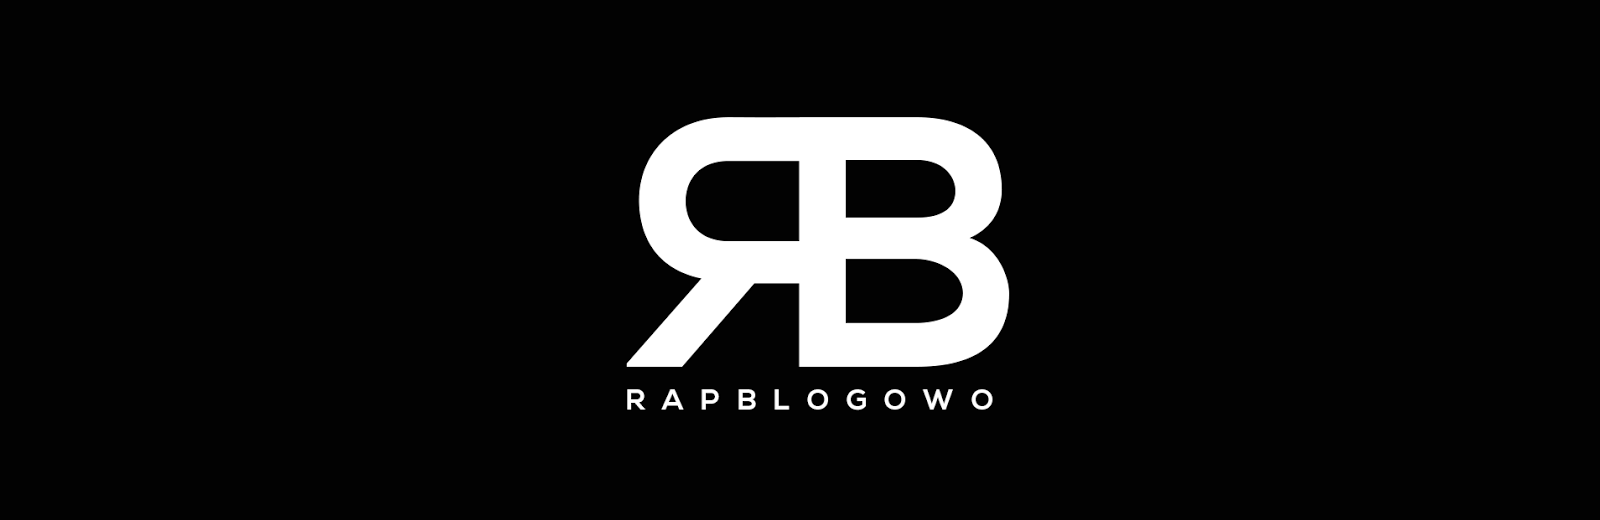 RapBlogowo